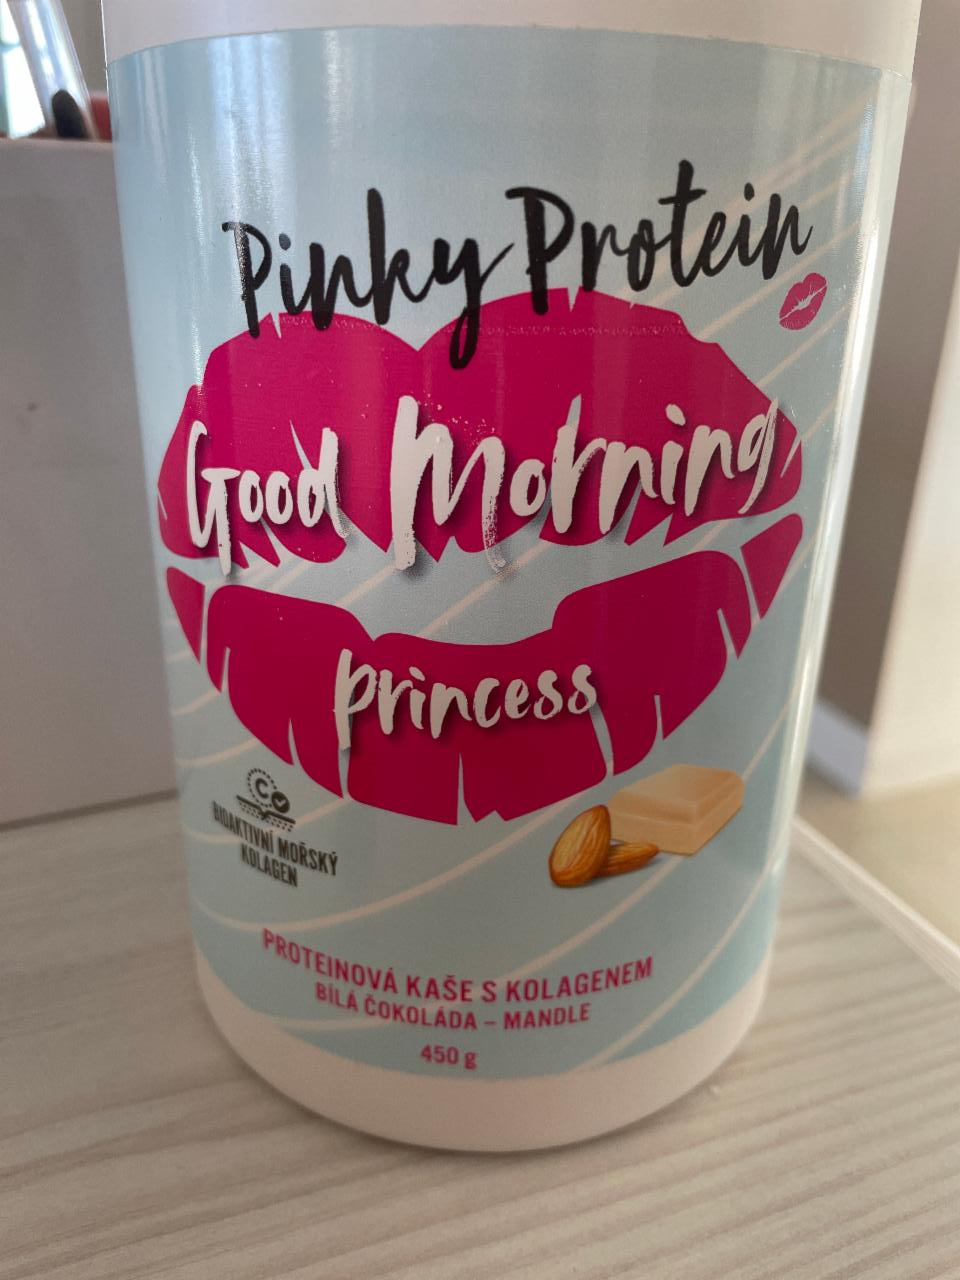 Fotografie - Good Morning princess Proteinová kaše s kolagenem Bílá čokoláda - Mandle Pinky Protein